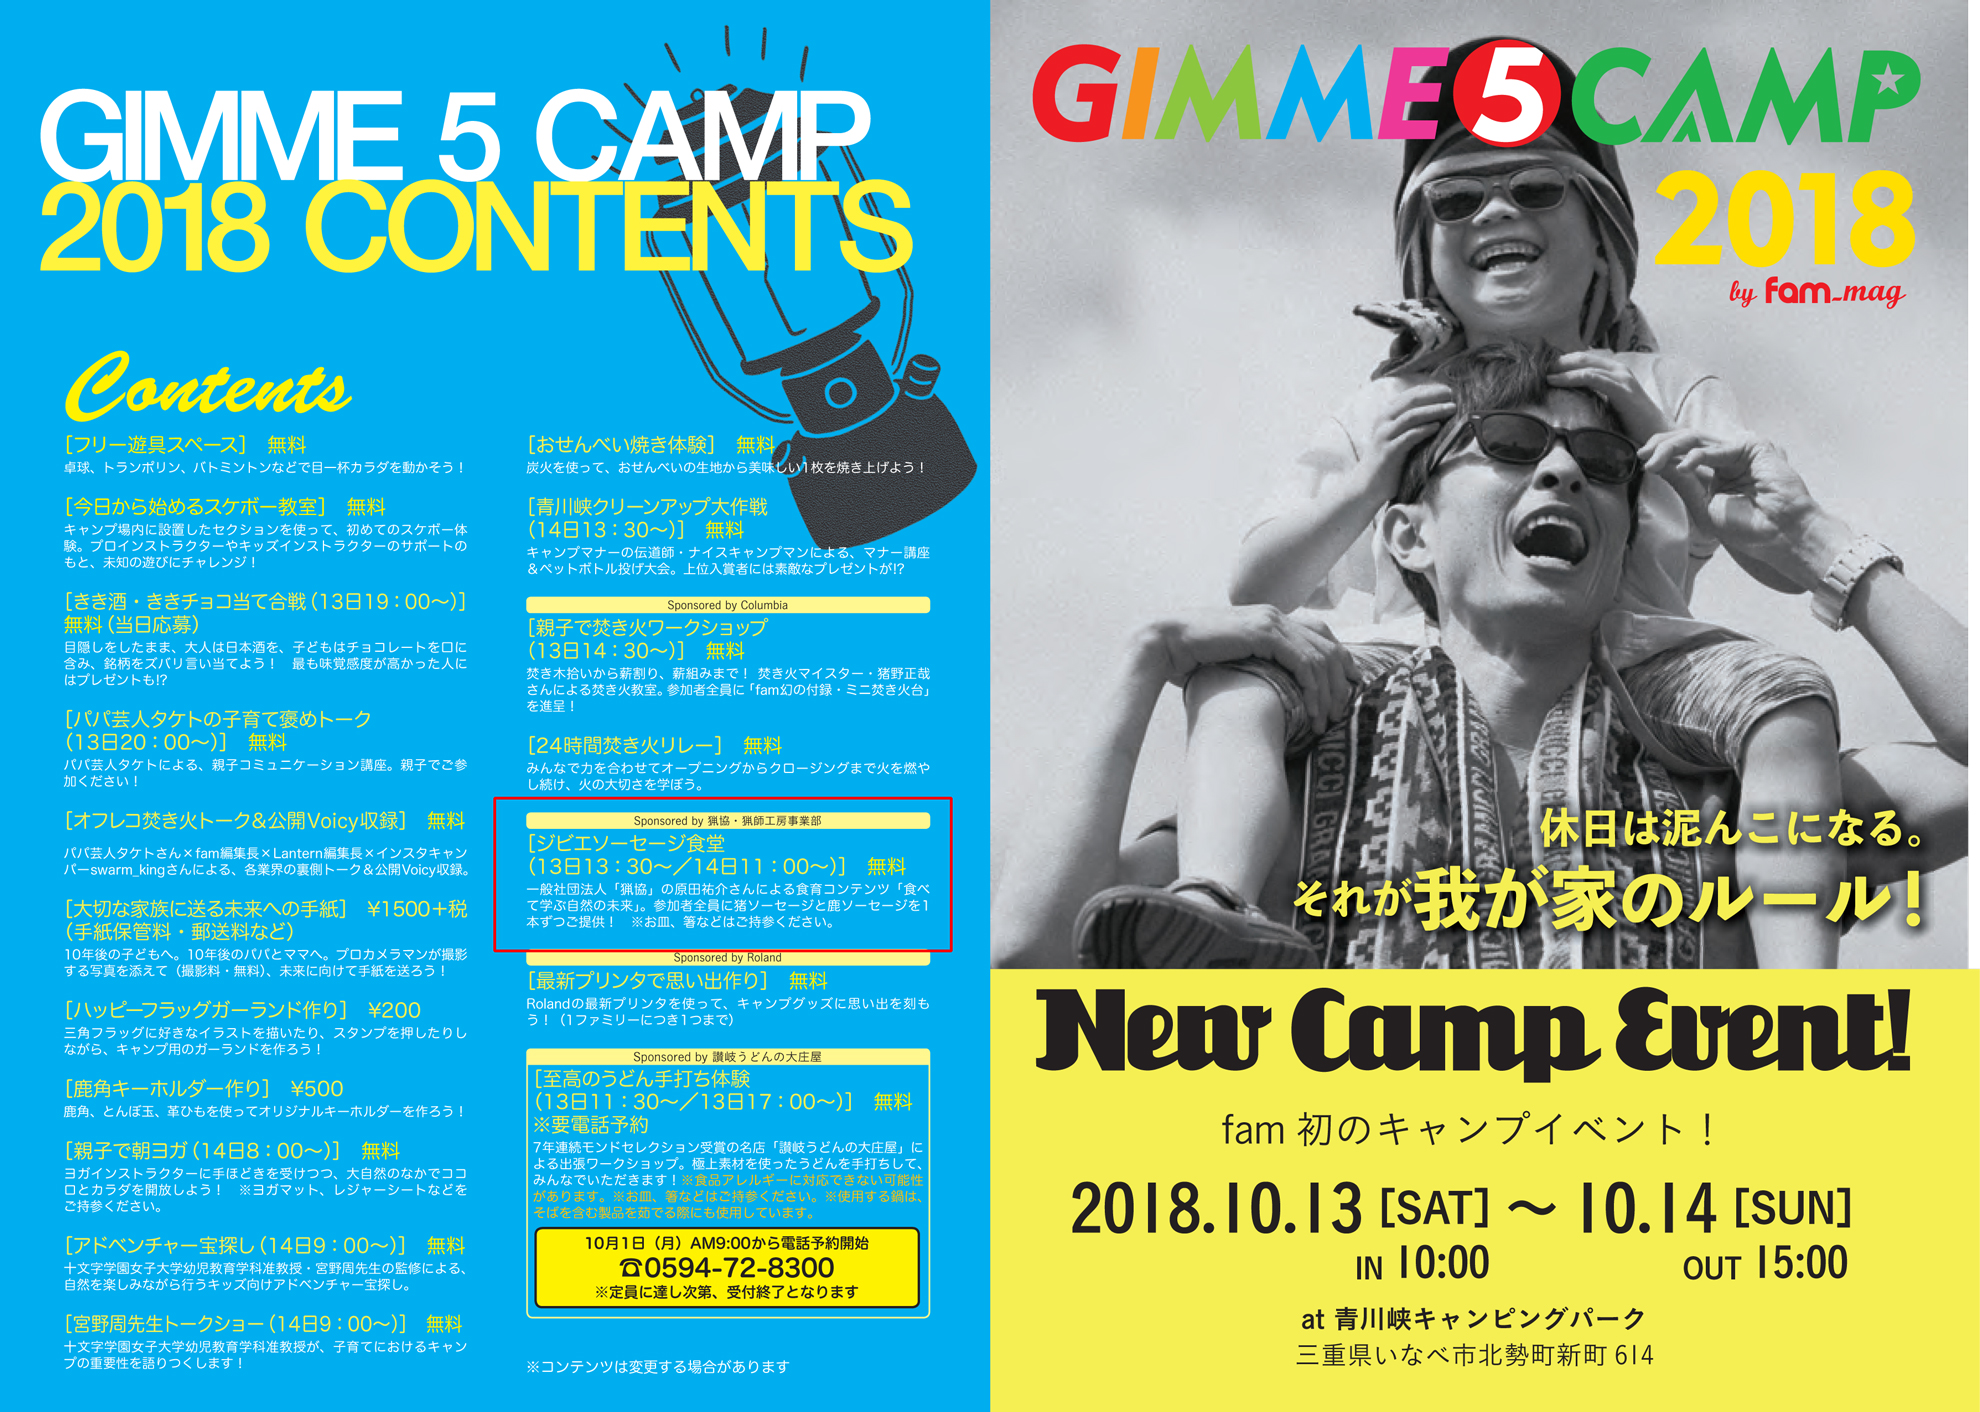 キャンプイベント「GIMME 5 CAMP」に参加します